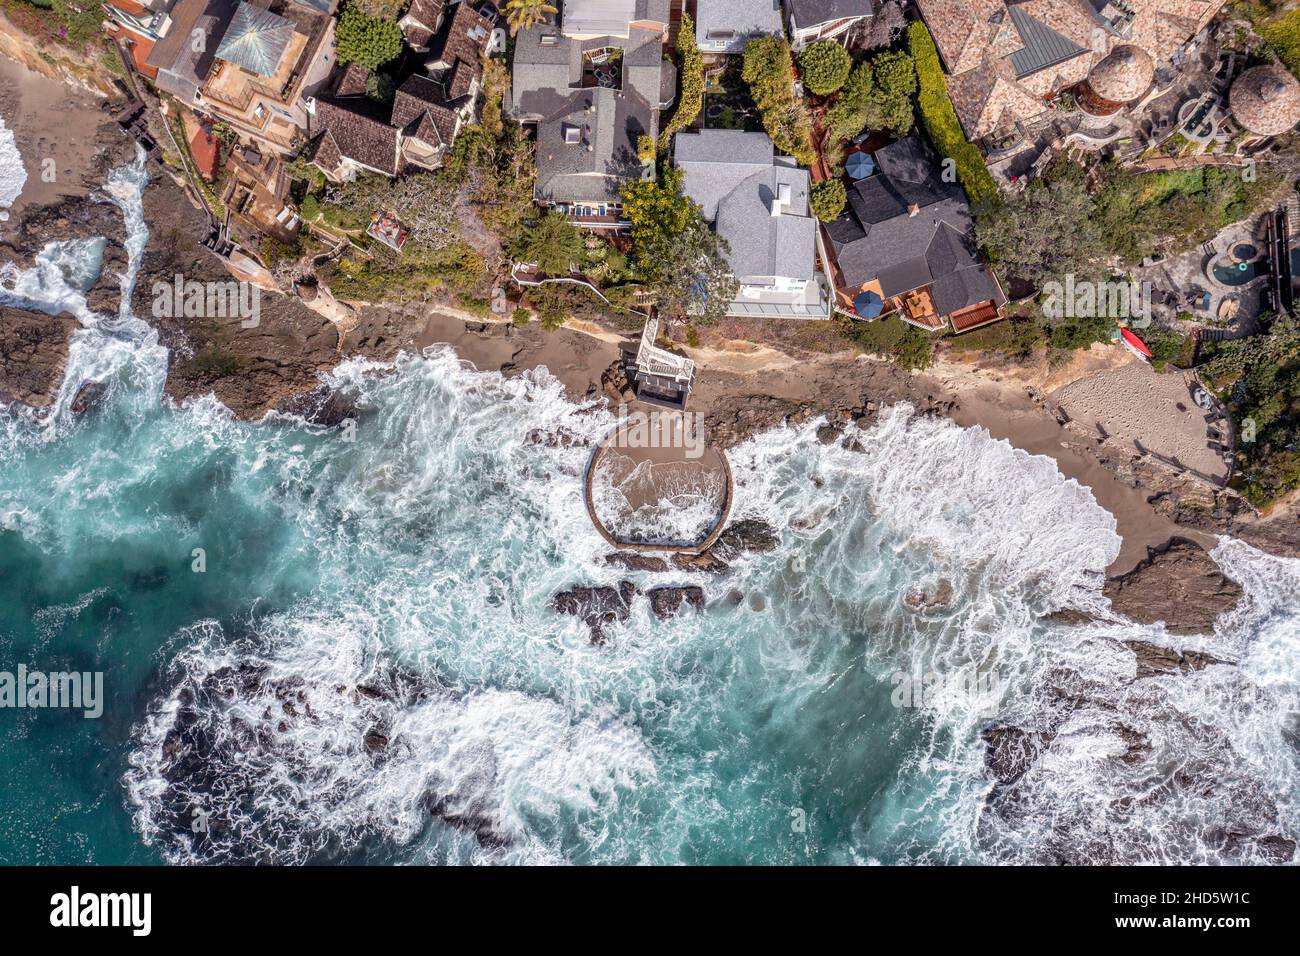 Vista aerea di Victoria Beach con la famosa Pirate's Tower, un'area della contea di Orange California per i ricchi e ricchi, mostra il wav crashing Foto Stock